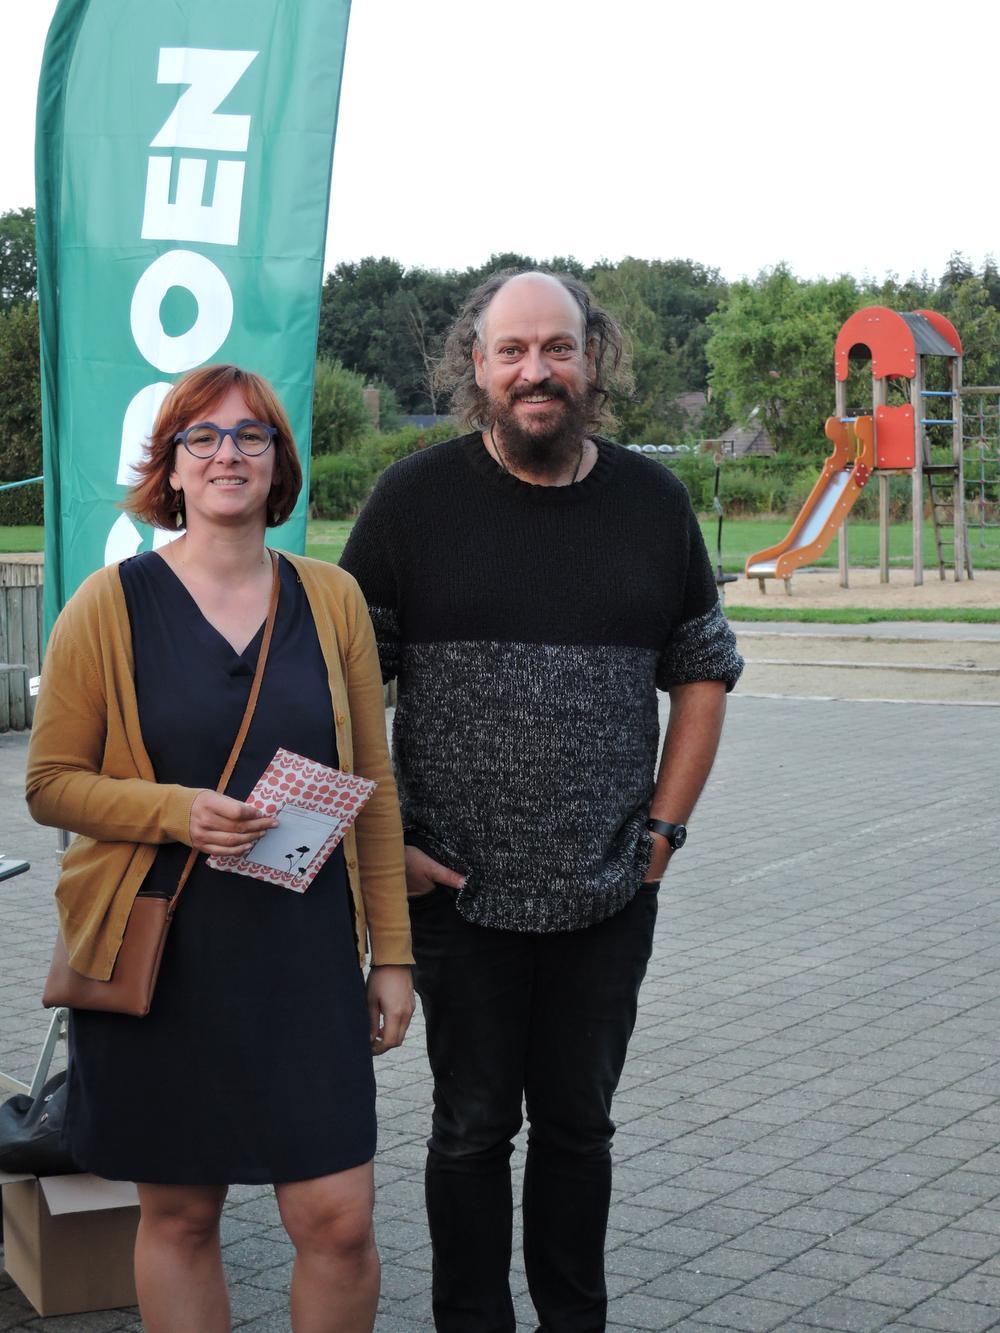 Lijsttrekker Carol Cartigny en huidig gemeenteraadslid Geert Vercruyce hopen op minstens twee zetels om hun ambities voor een groen Oostkamp waar te maken.